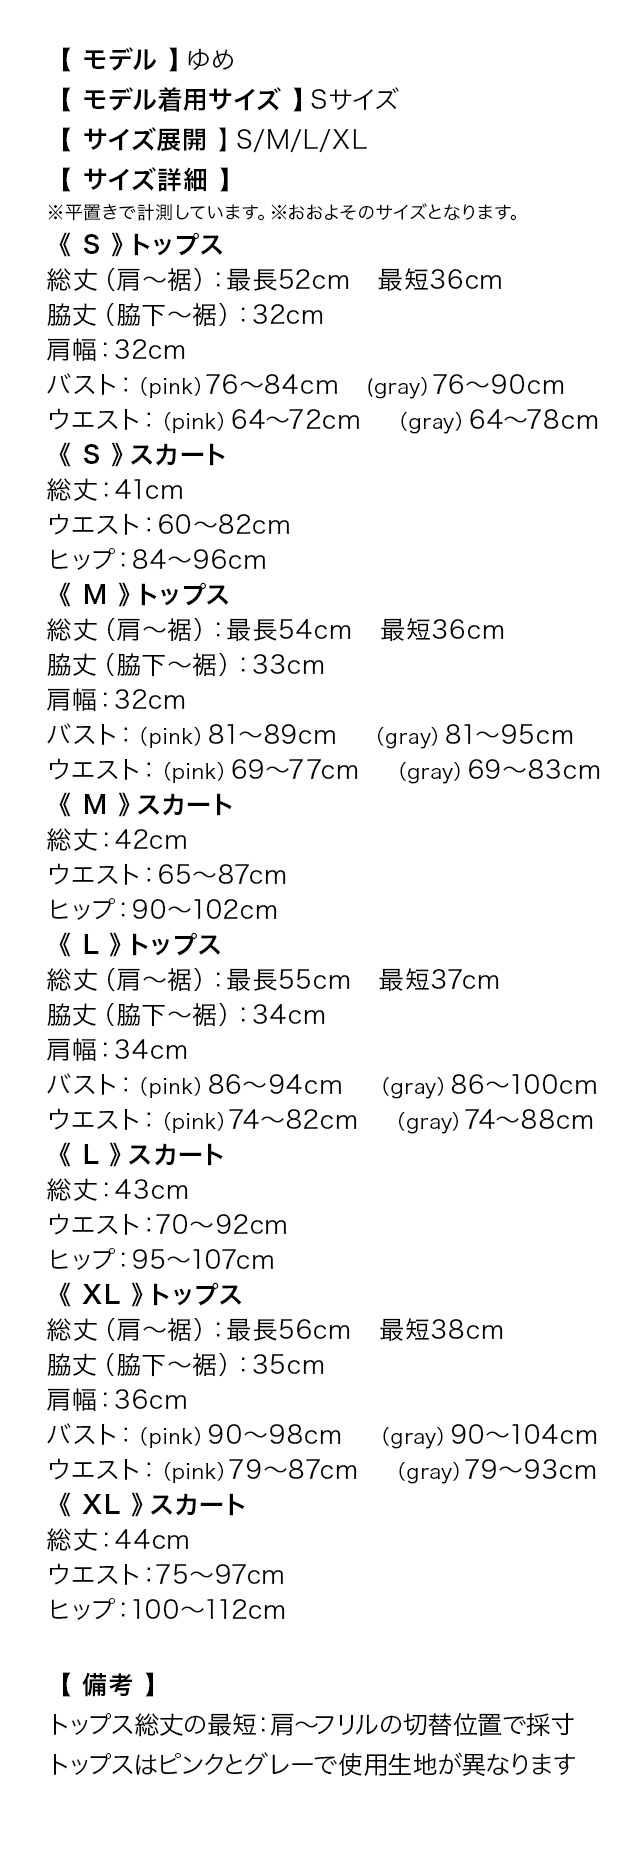 ノースリーブフリルぺプラムデザインタイトミニスカートセットアップドレスのサイズ表